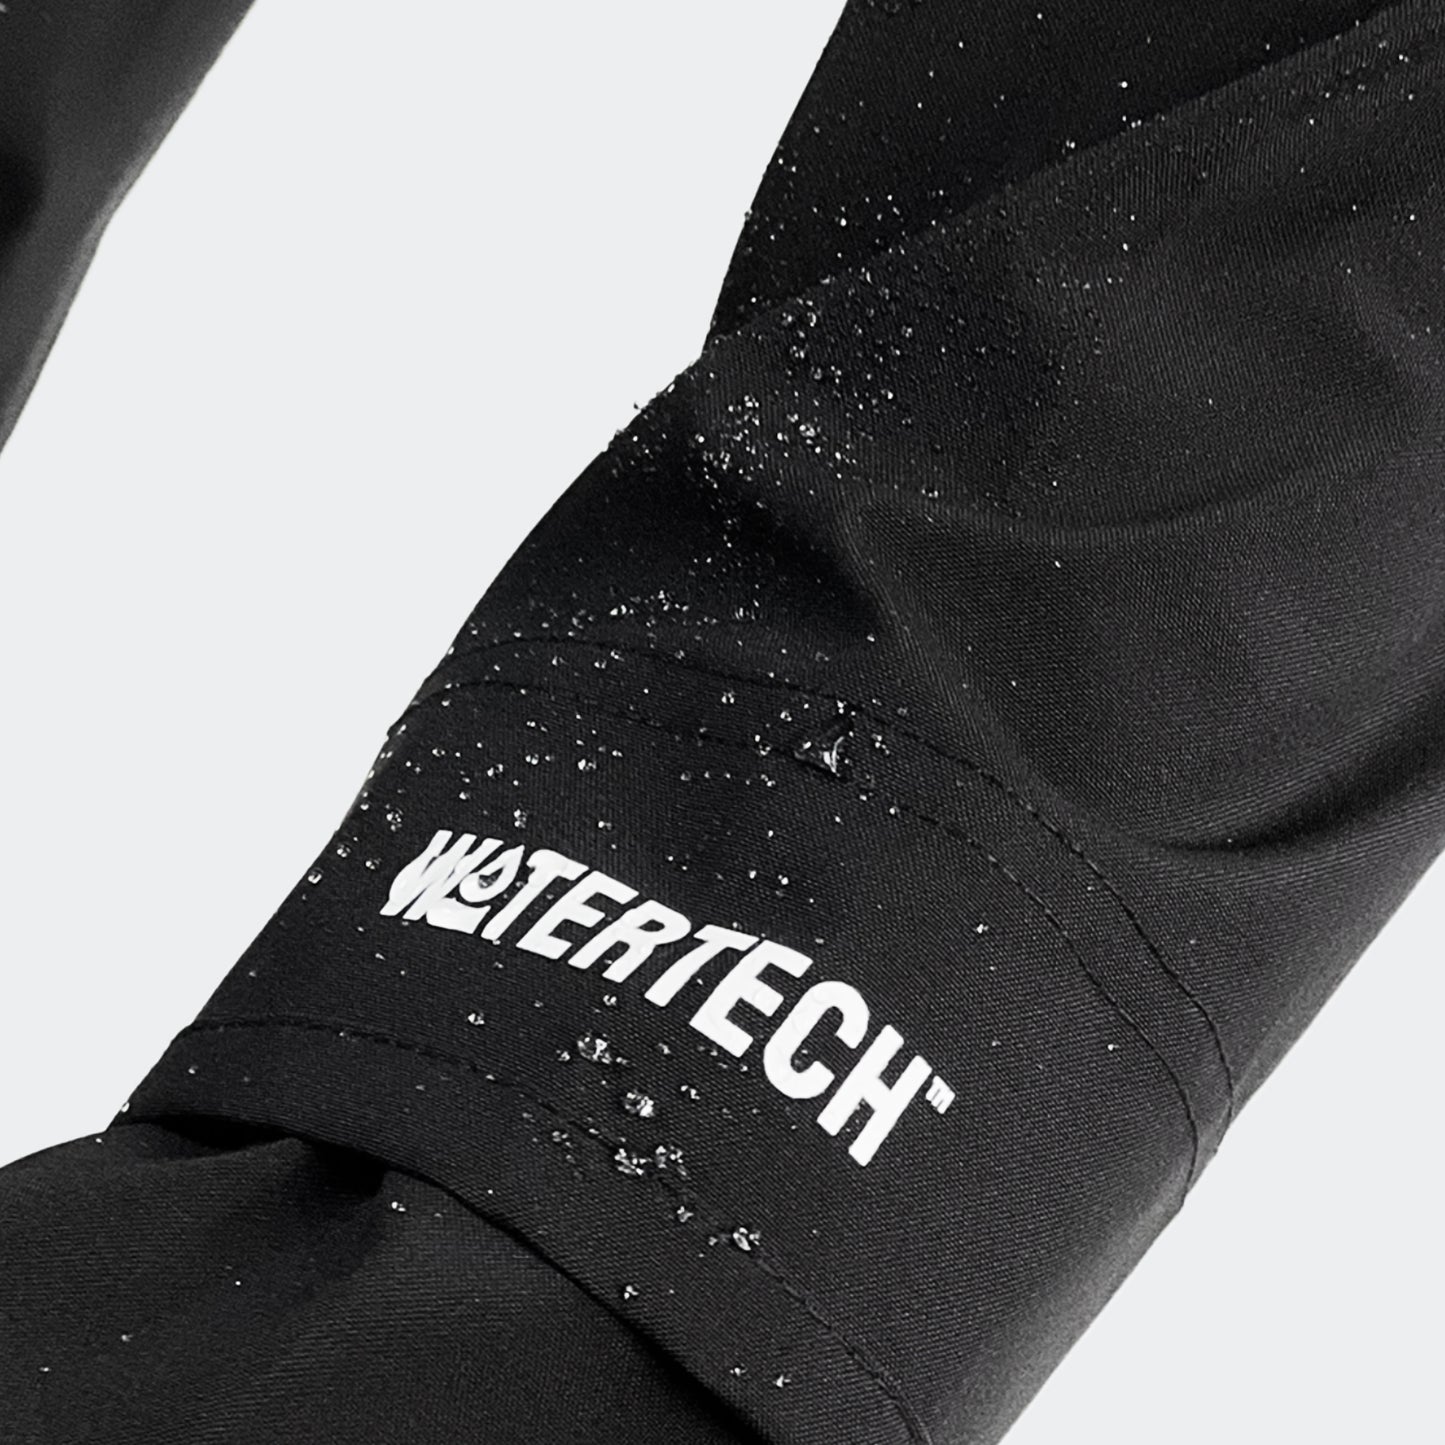 Watertech™ - Pullover Hoodie Training Jacket - Black